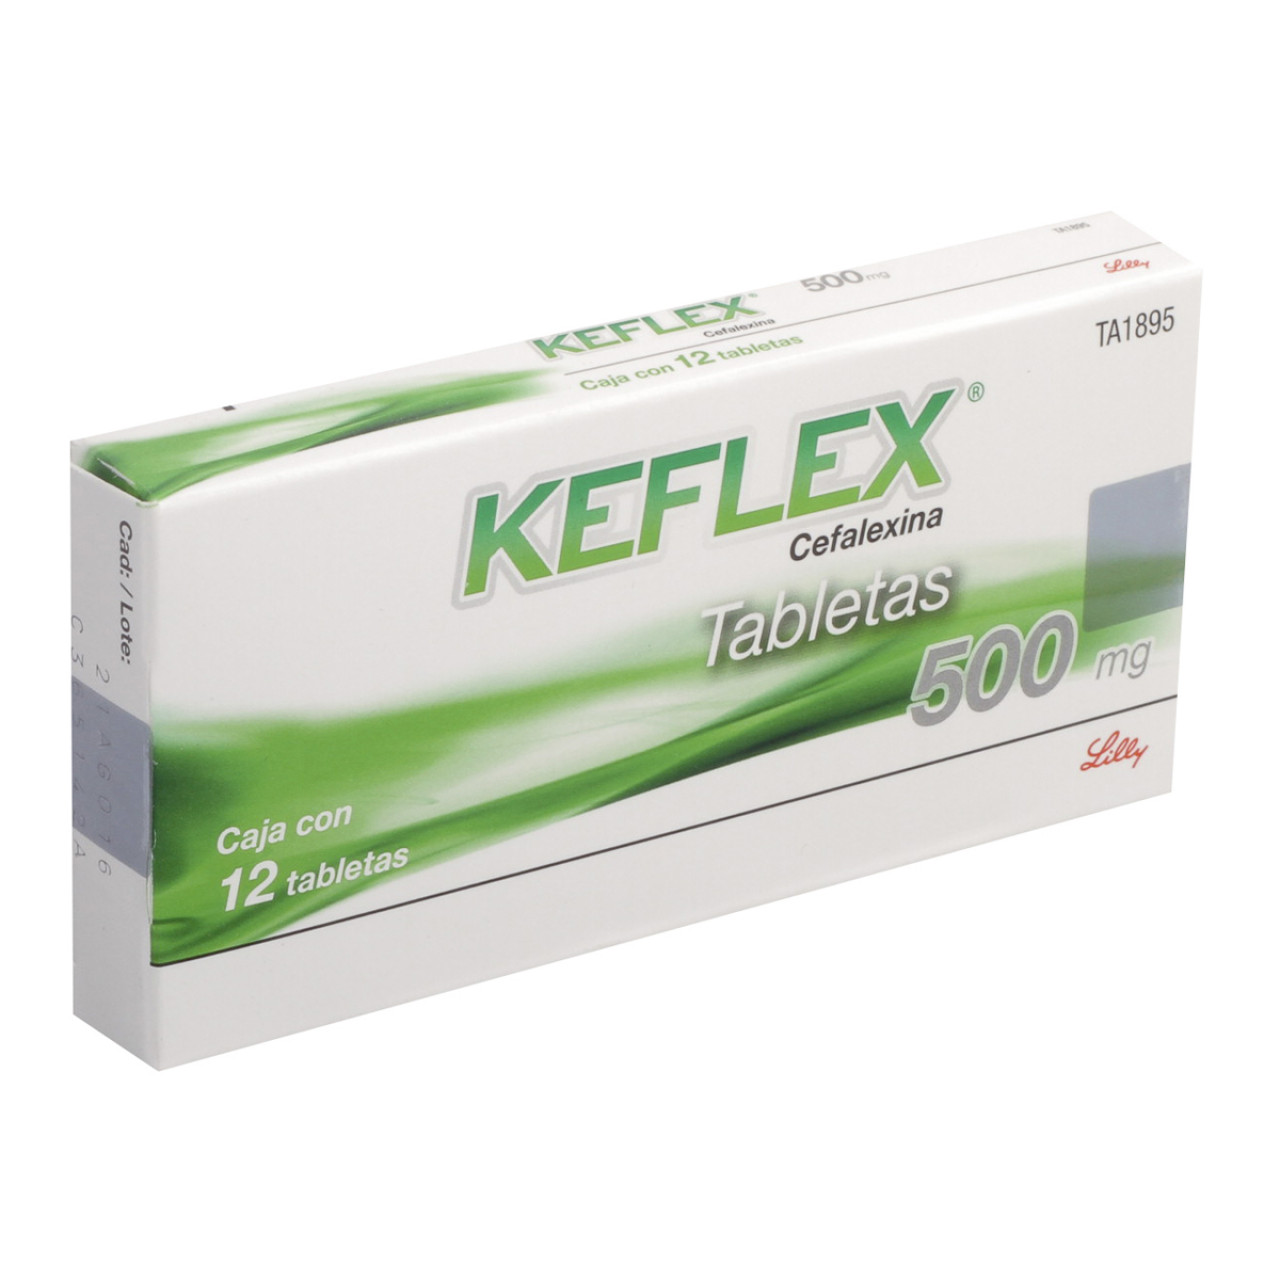 Keflex: ¿Qué es y cuánto cuesta?